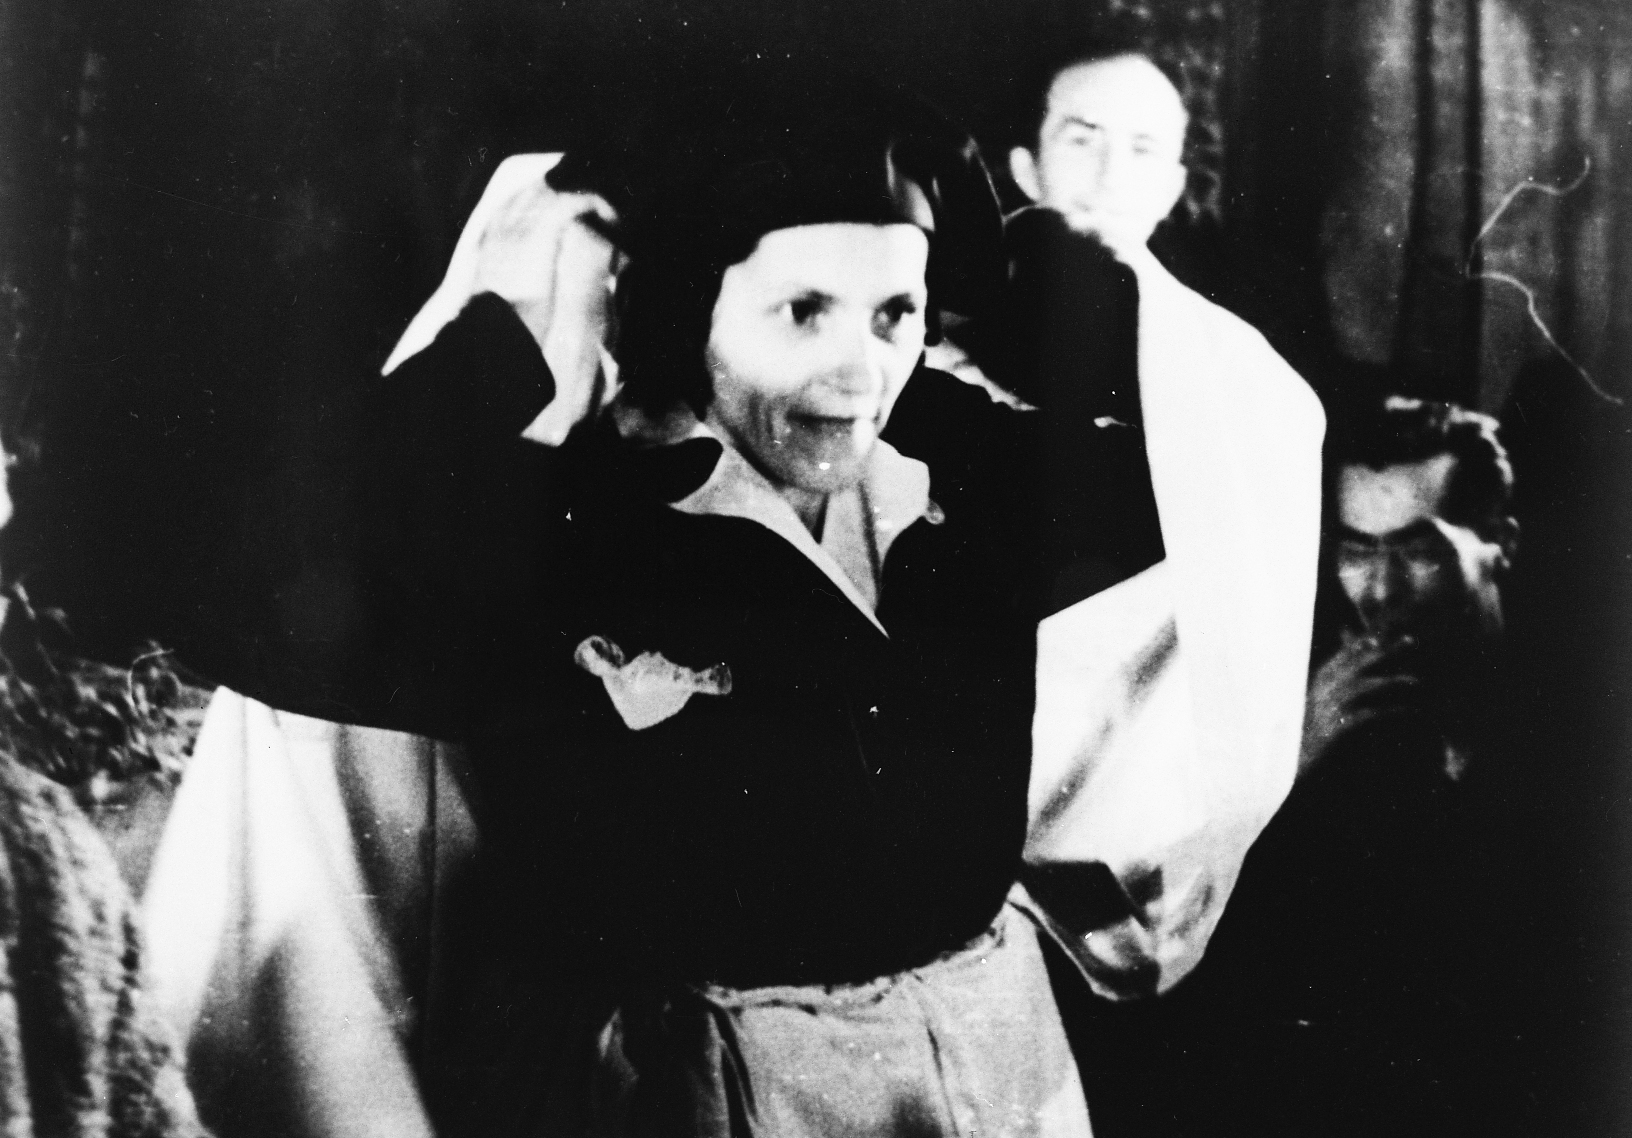 Muslimanke skidaju zar na susretu žena u Sarajevu 13. srpnja 1947. godine. Nošenje zara okarakterizirano je kao prepreka emancipaciji muslimanki. Tada je zatraženo i ukidanje nošenja zara. Samo dan nakon skidanja zara, 14. lipnja, donesena je rezolucija o pokretu muslimanki za skidanje zara. Zakon o zabrani nošenja zara i feredže službeno je donesen 27. rujna 1950. godine.